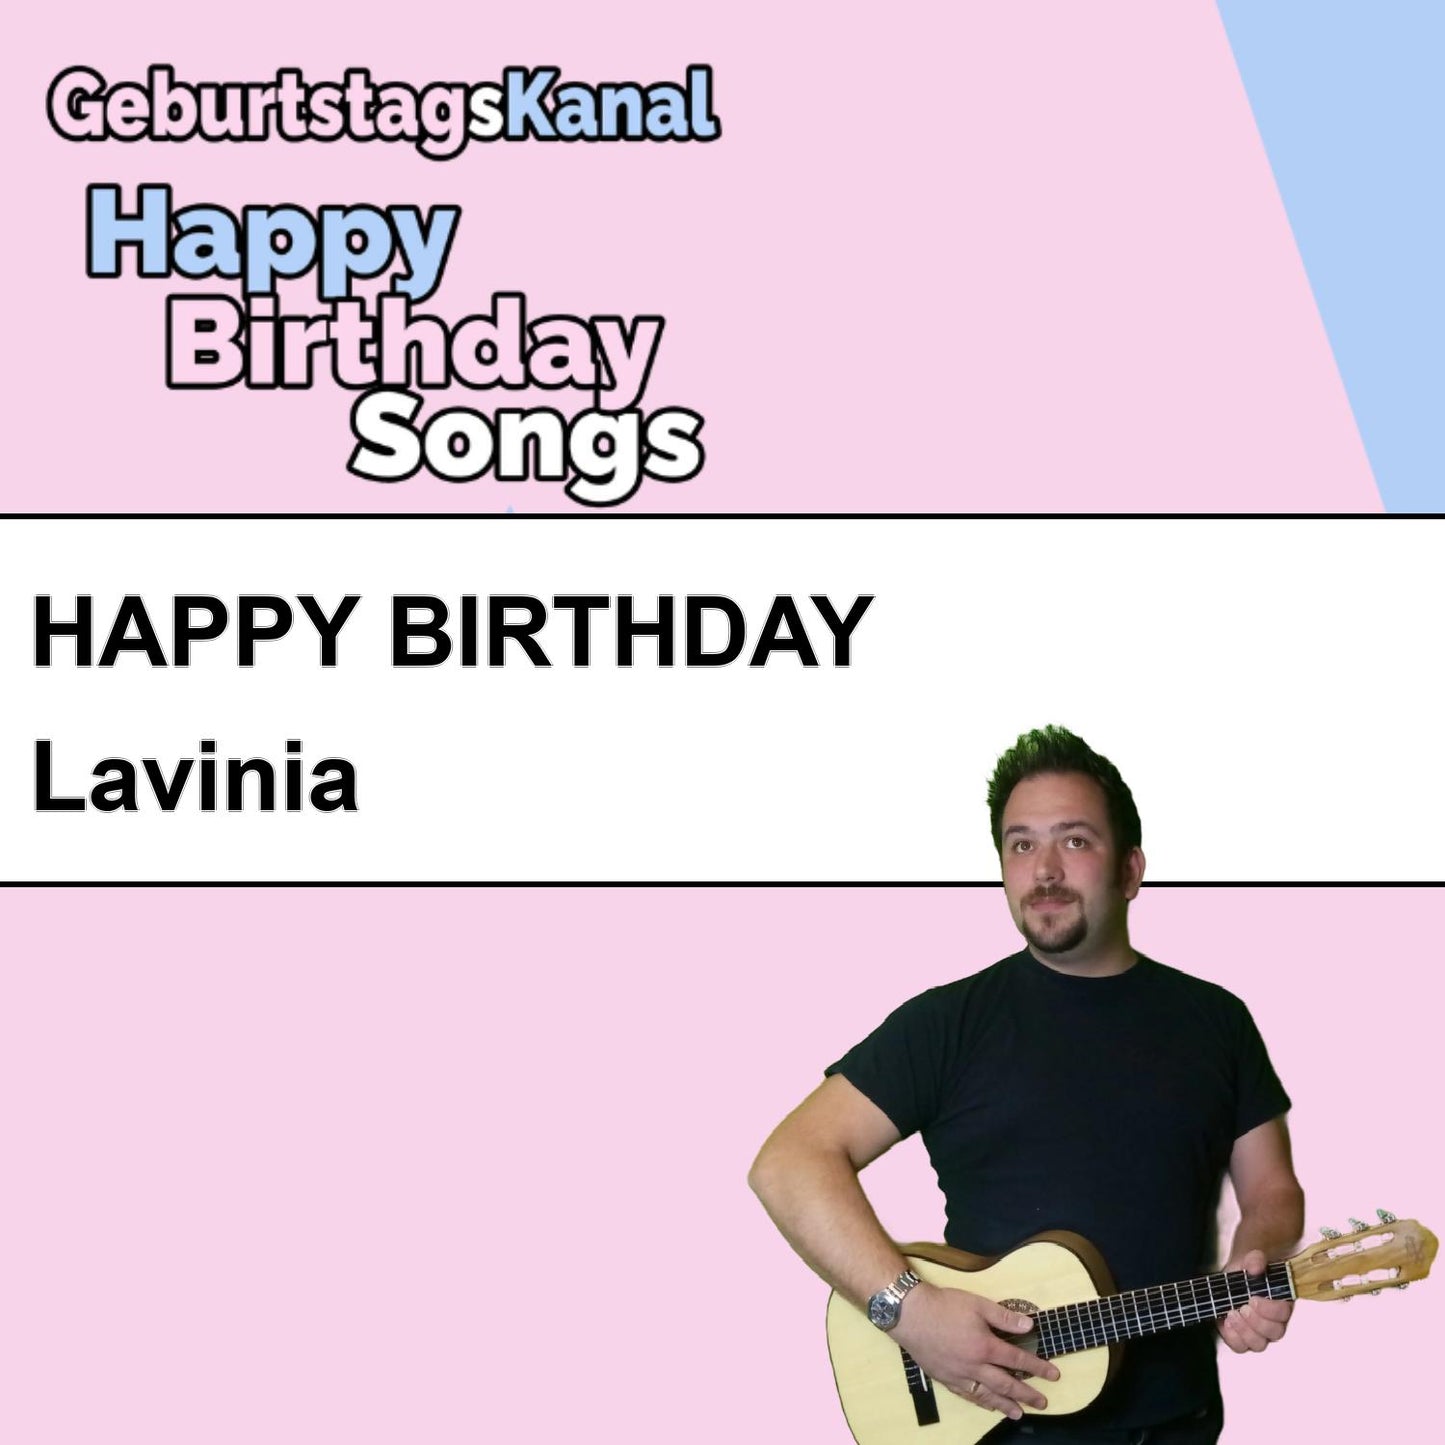 Produktbild Happy Birthday to you Lavinia mit Wunschgrußbotschaft